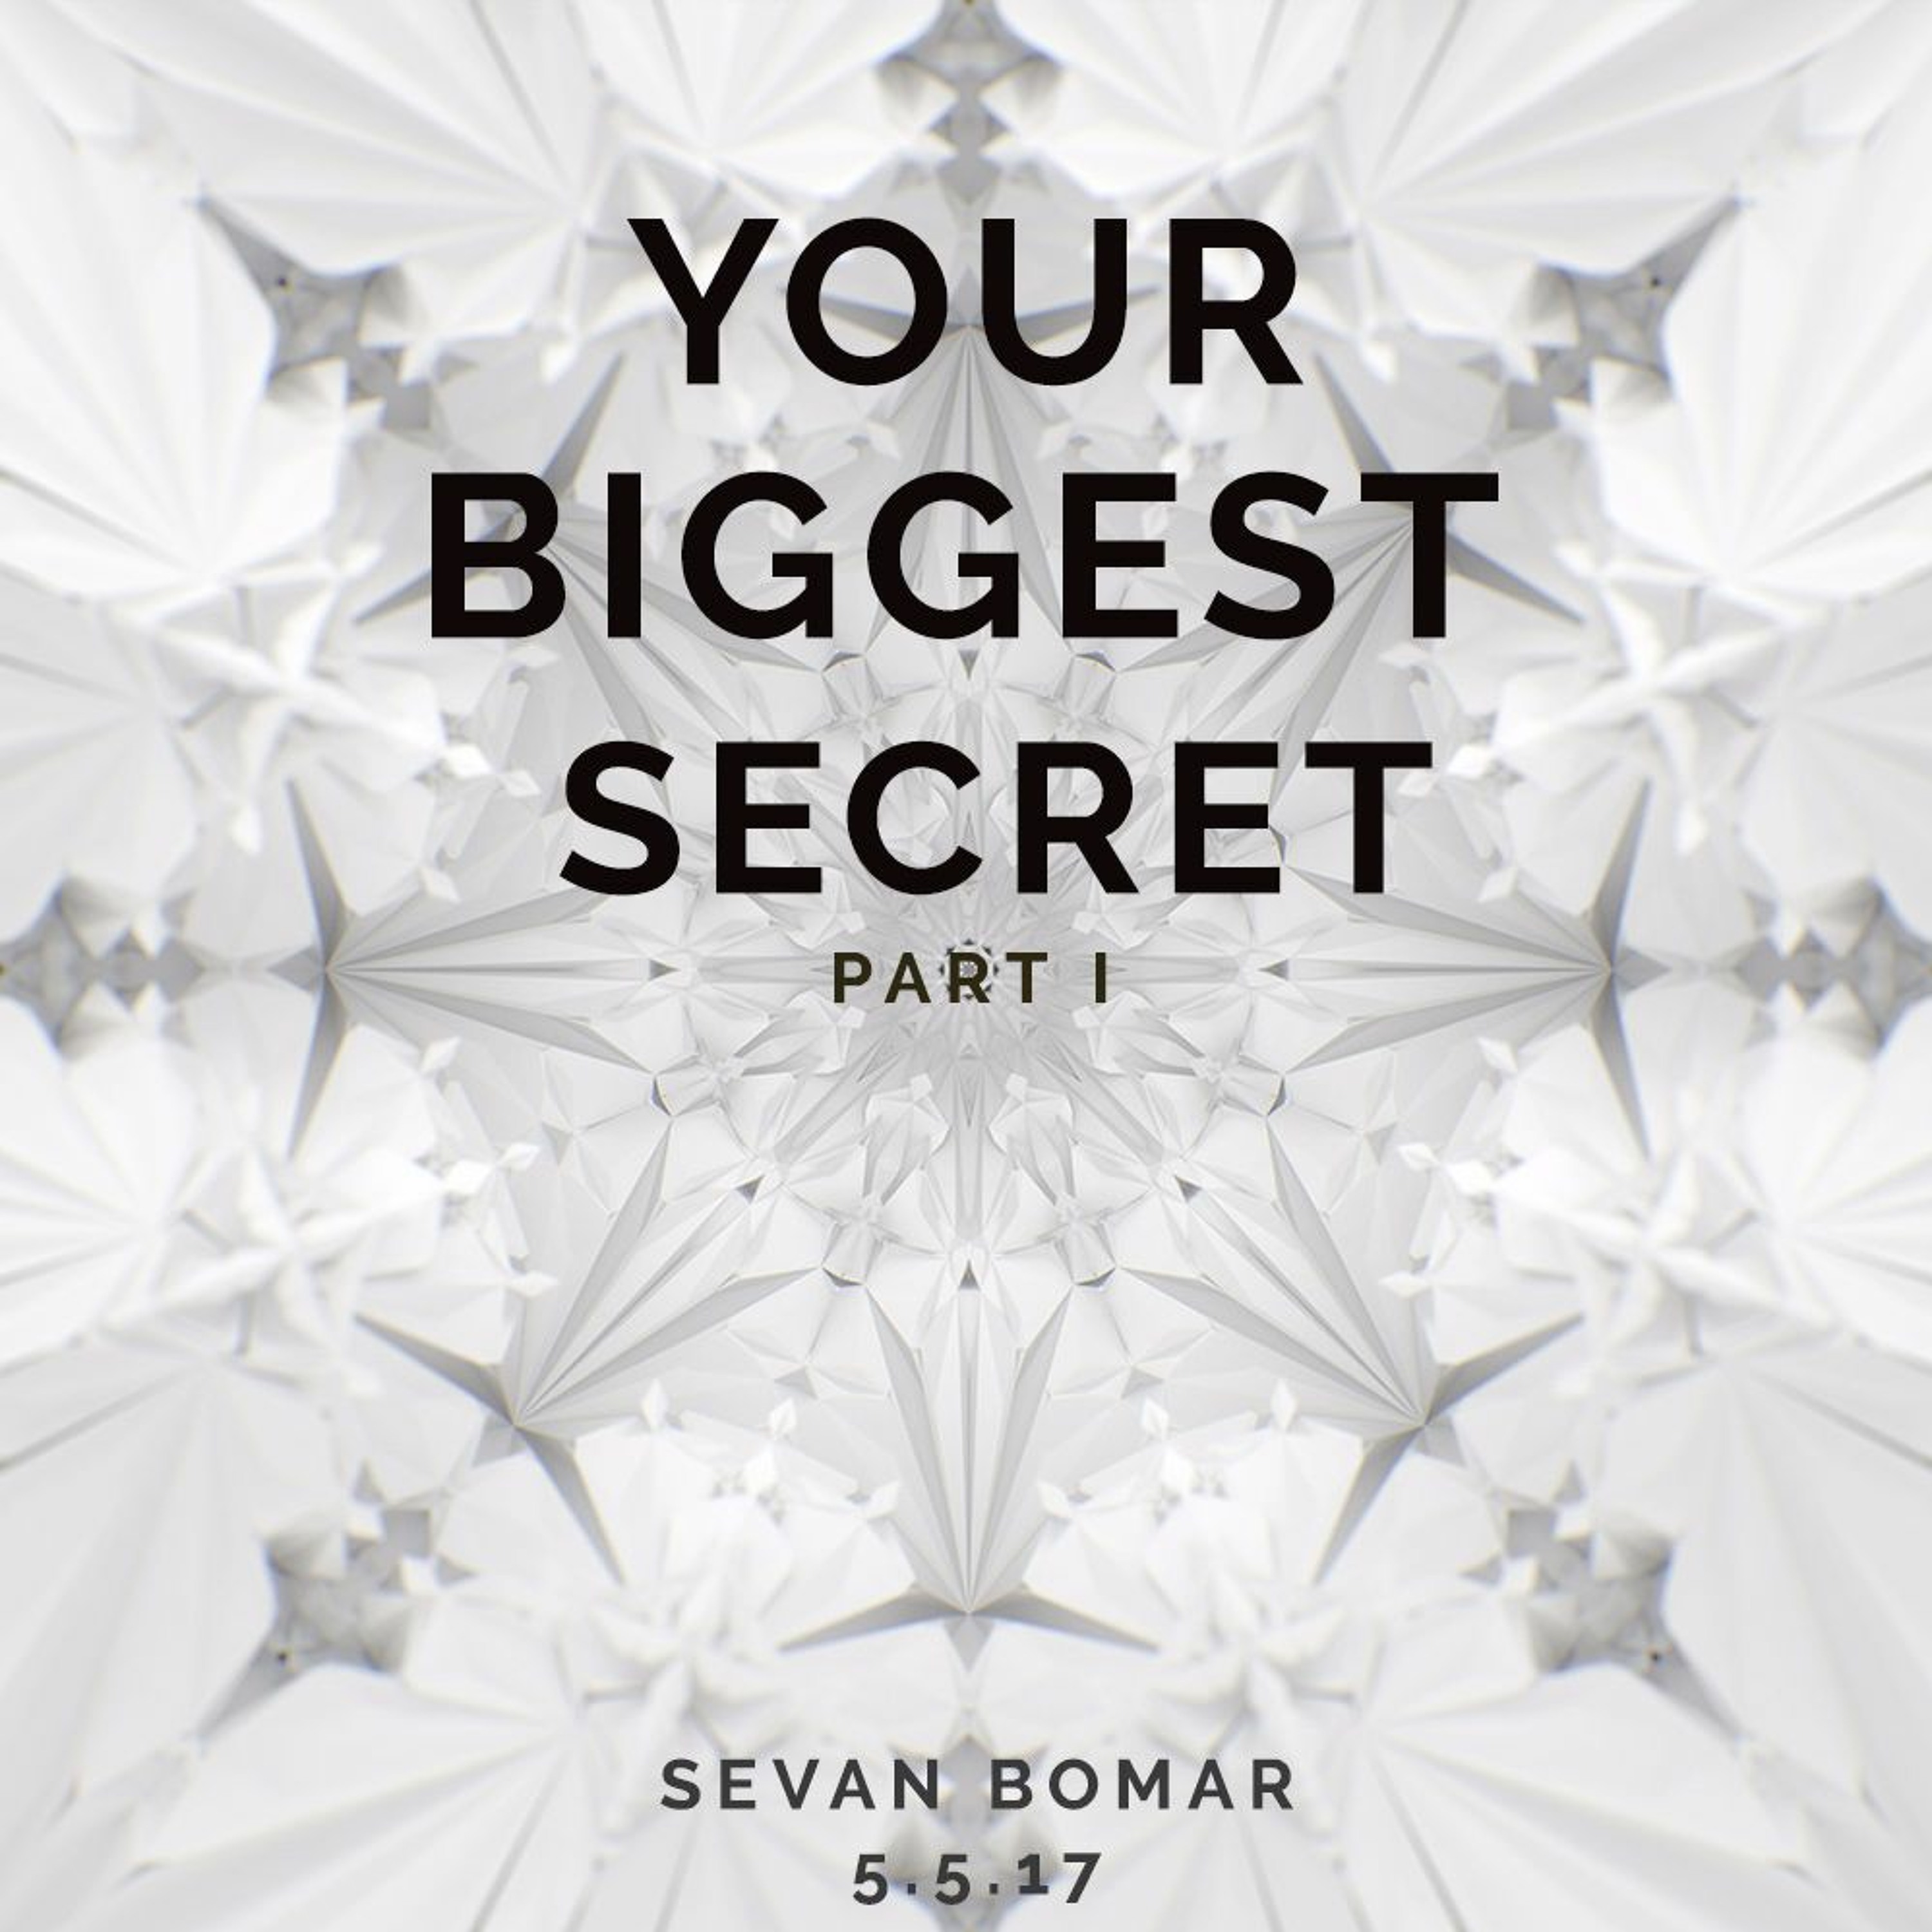 SEVAN BOMAR - YOUR BIGGEST SECRET PART 1